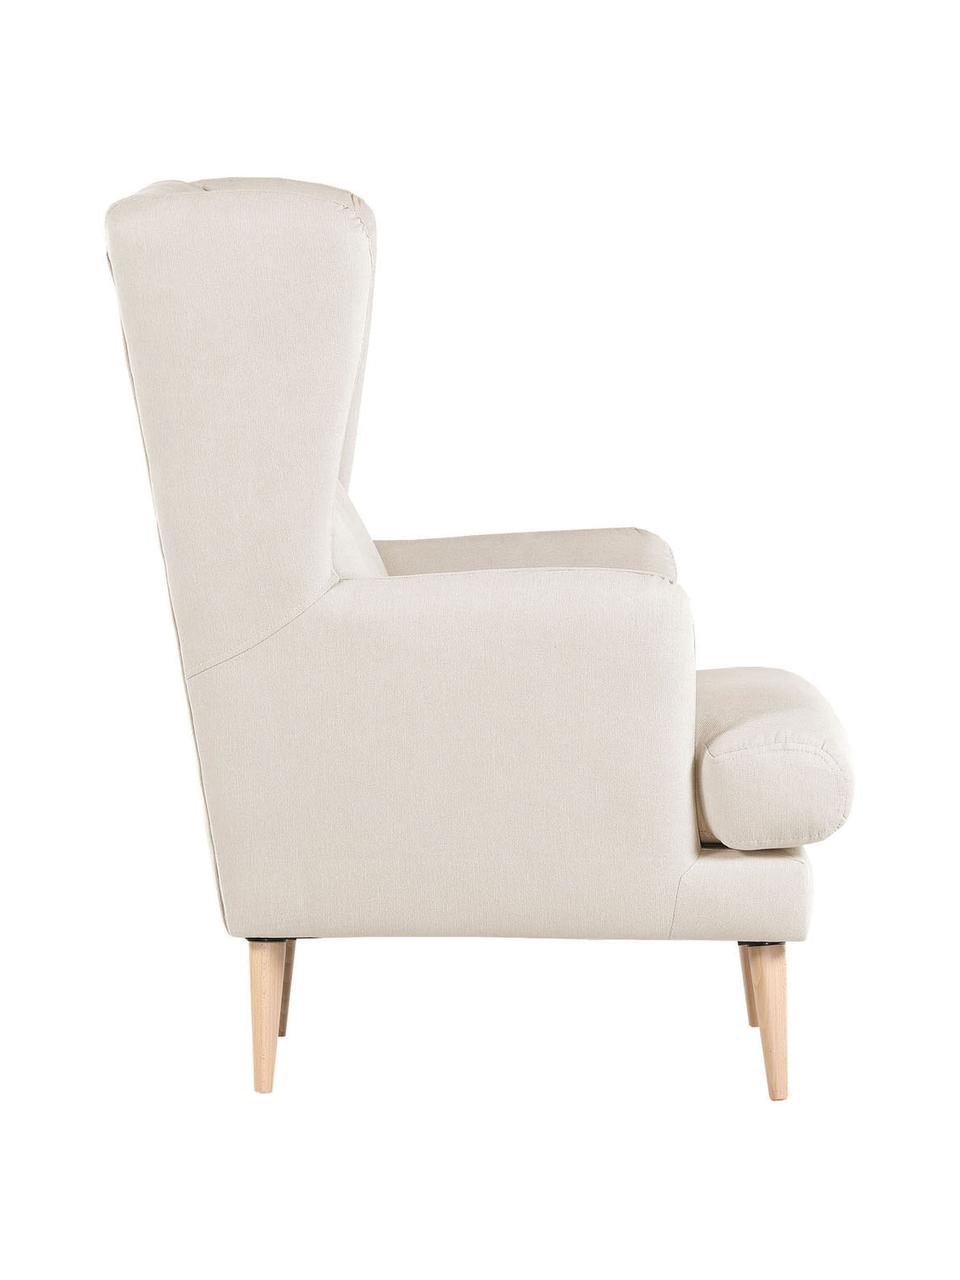 Fotel uszak w stylu scandi Robin, Tapicerka: 90% poliester, 10% poliam, Nogi: drewno lakierowane, Beżowa tkanina, S 77 x G 85 cm